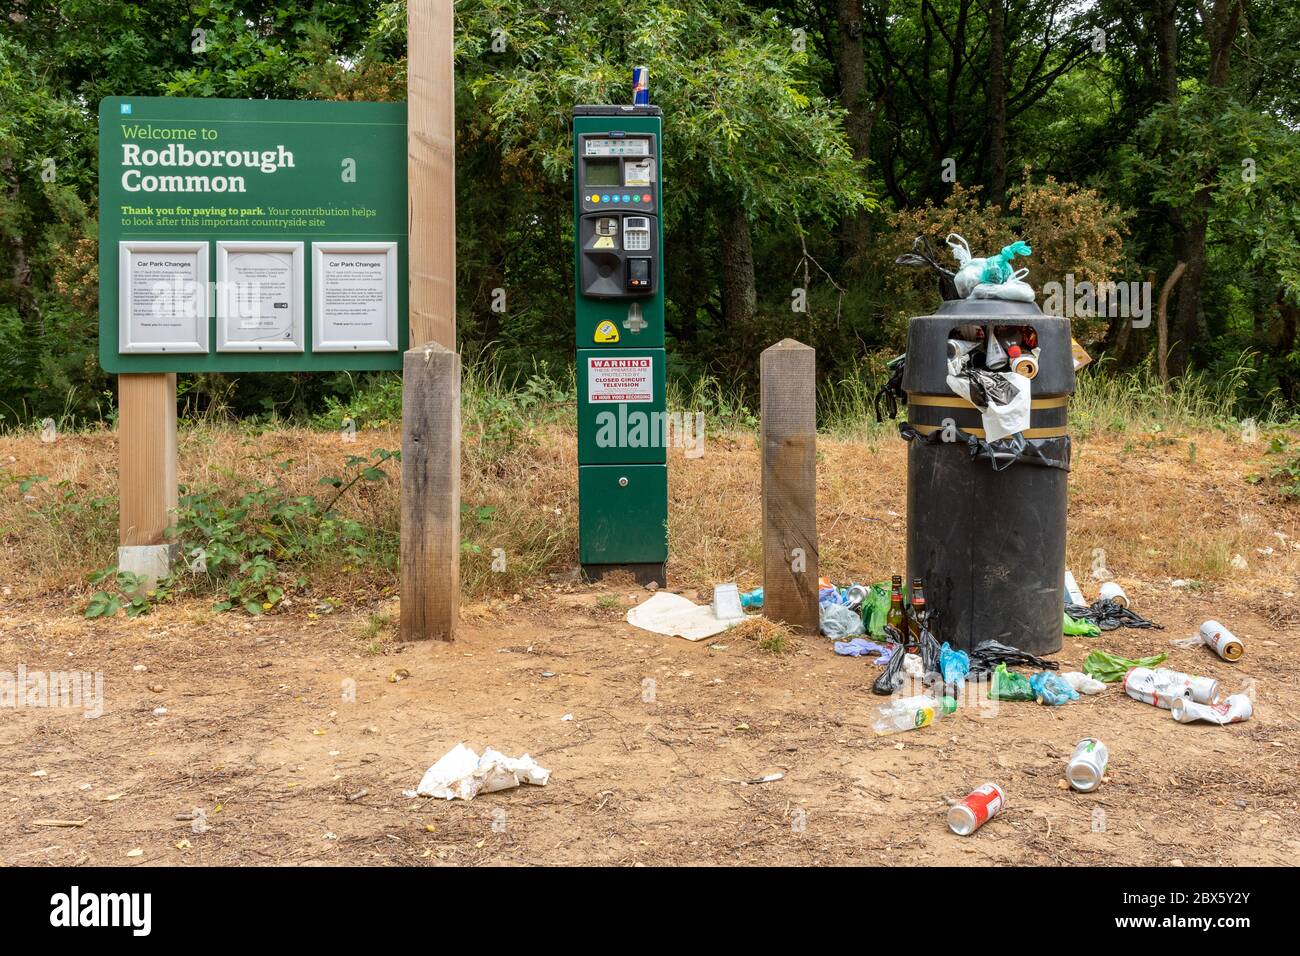 Basura desbordada de basura en una reserva natural del Reino Unido. Comportamiento antisocial en el campo durante la pandemia de covid-19 del coronavirus de 2020 Foto de stock